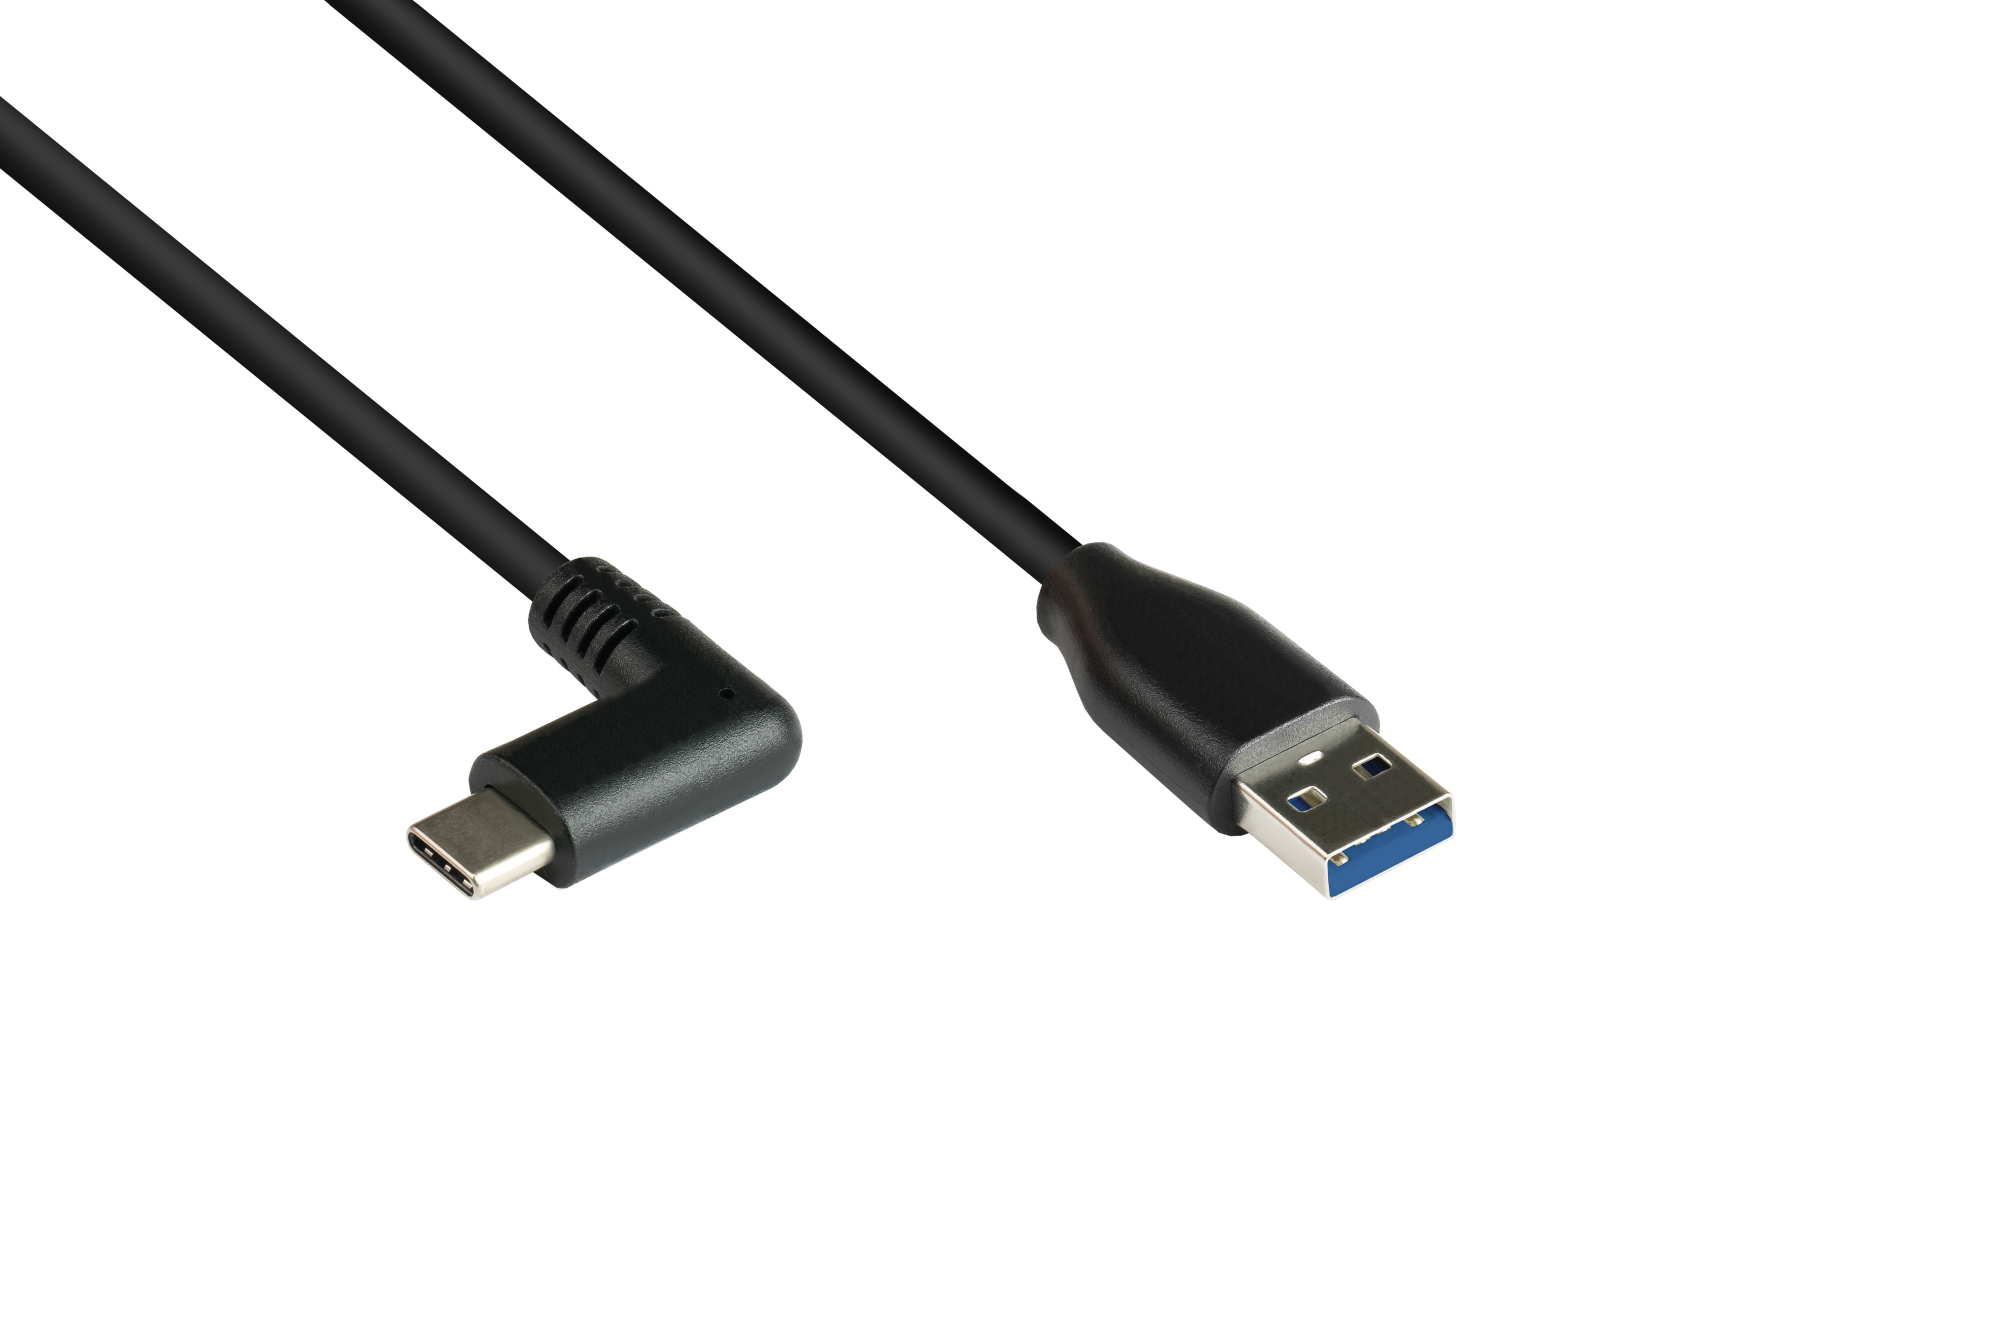 Anschlusskabel USB 3.0, USB-C™ Stecker 90° gewinkelt an USB 3.0 A Stecker, CU, schwarz, 0,5m, Good C